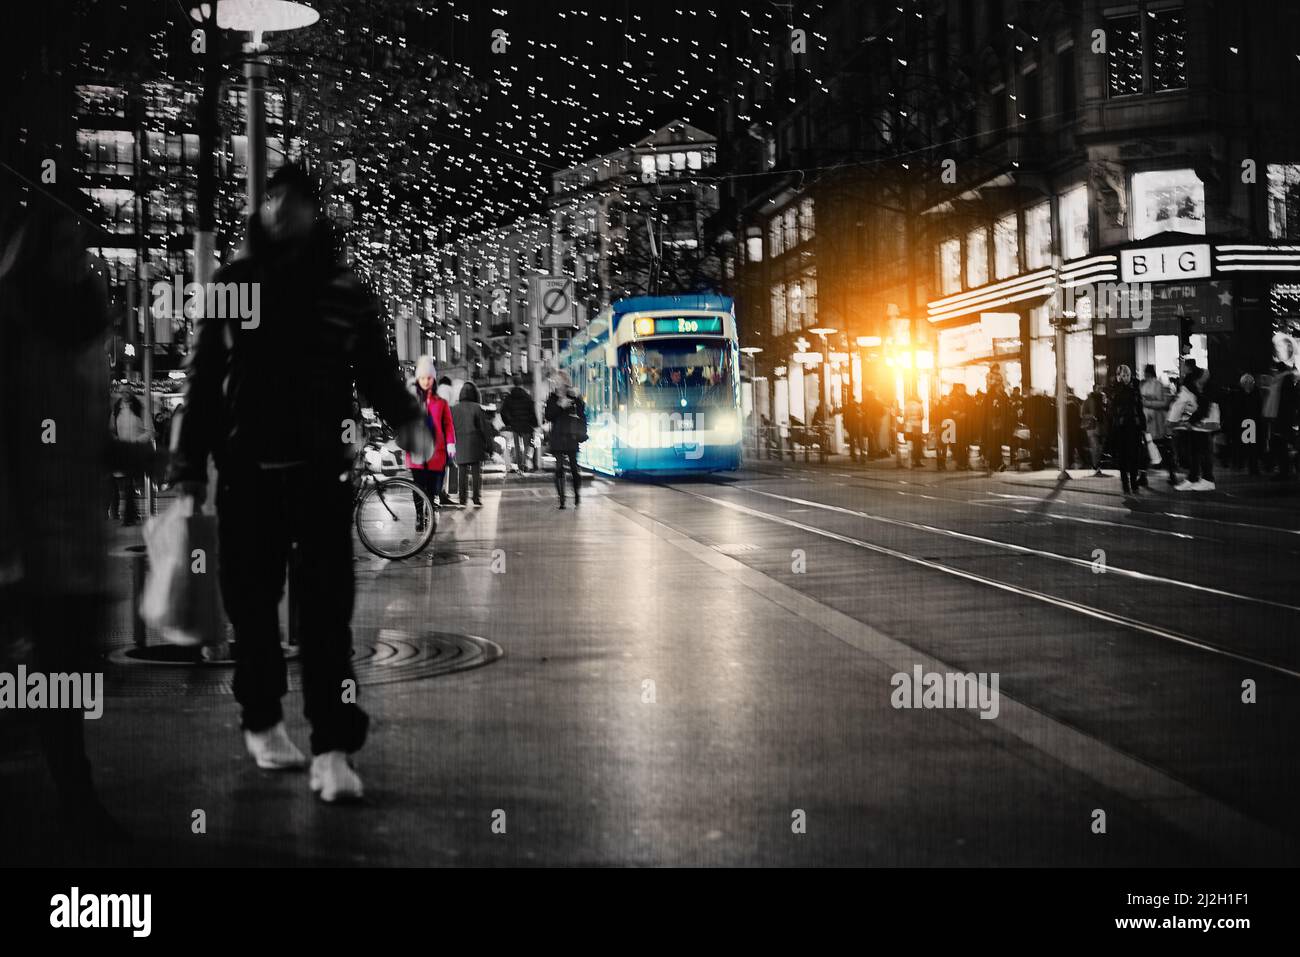 Trasporti pubblici, 24hrs al giorno. Girato digitalmente manipolato di una strada trafficata della città di notte. Foto Stock